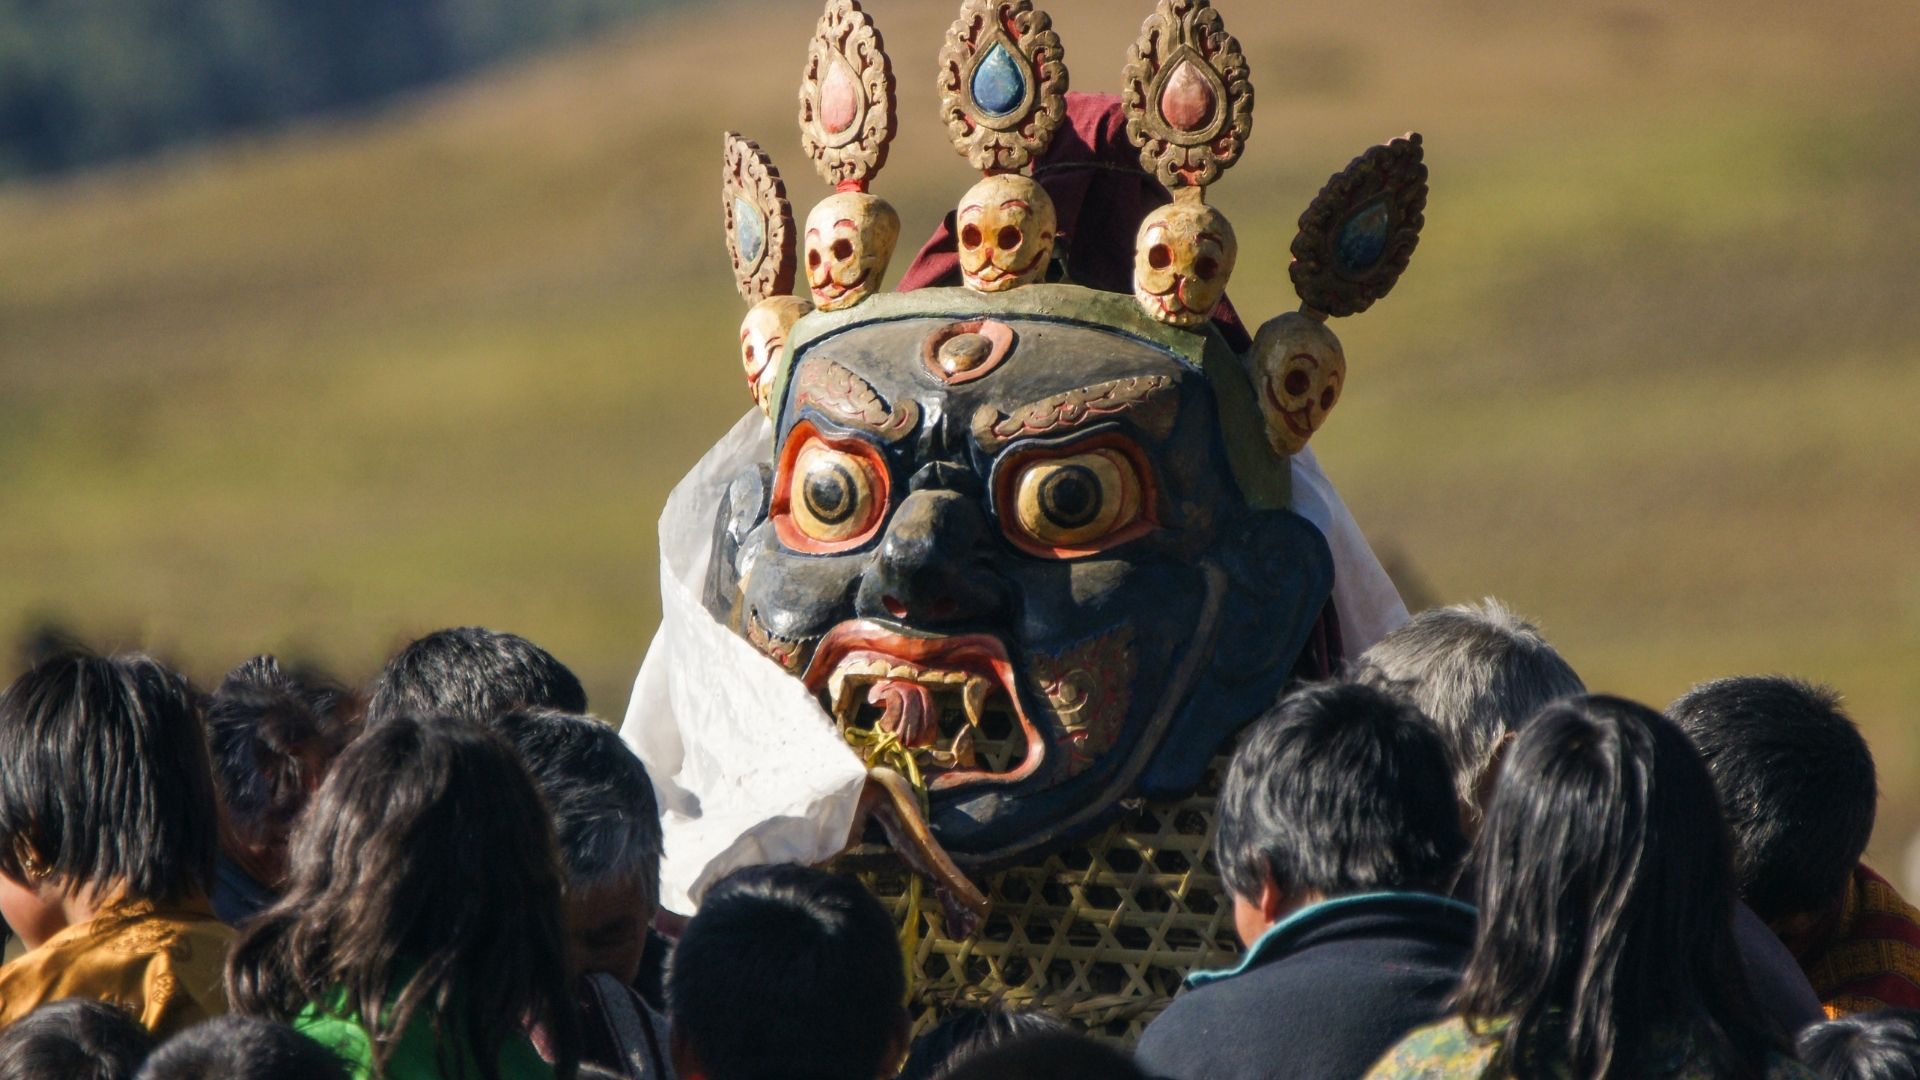 Bhutan tsetchu festival